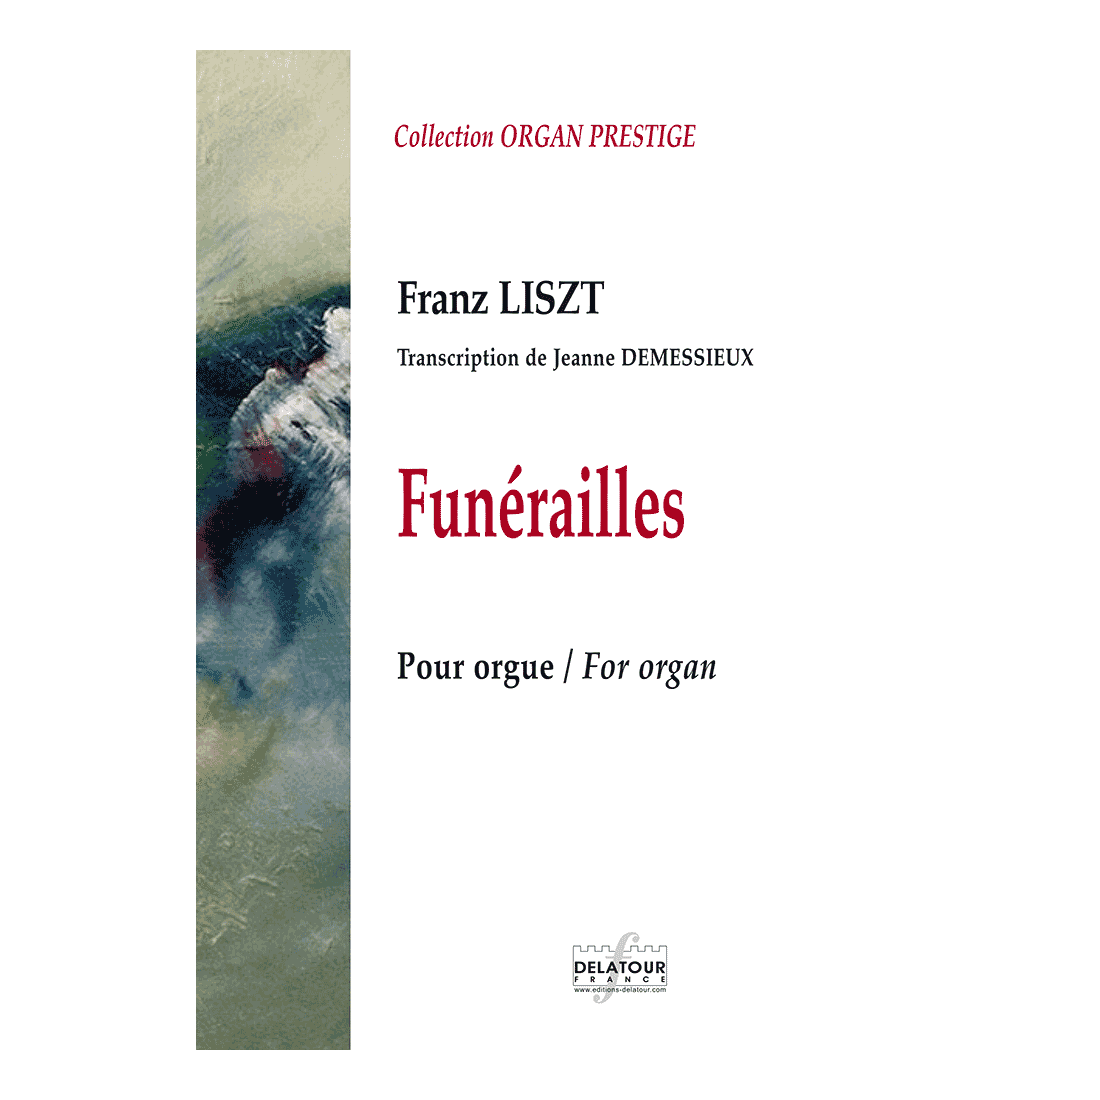 Funérailles de Liszt (Transcription for organ by Jeanne DEMESSIEUX)